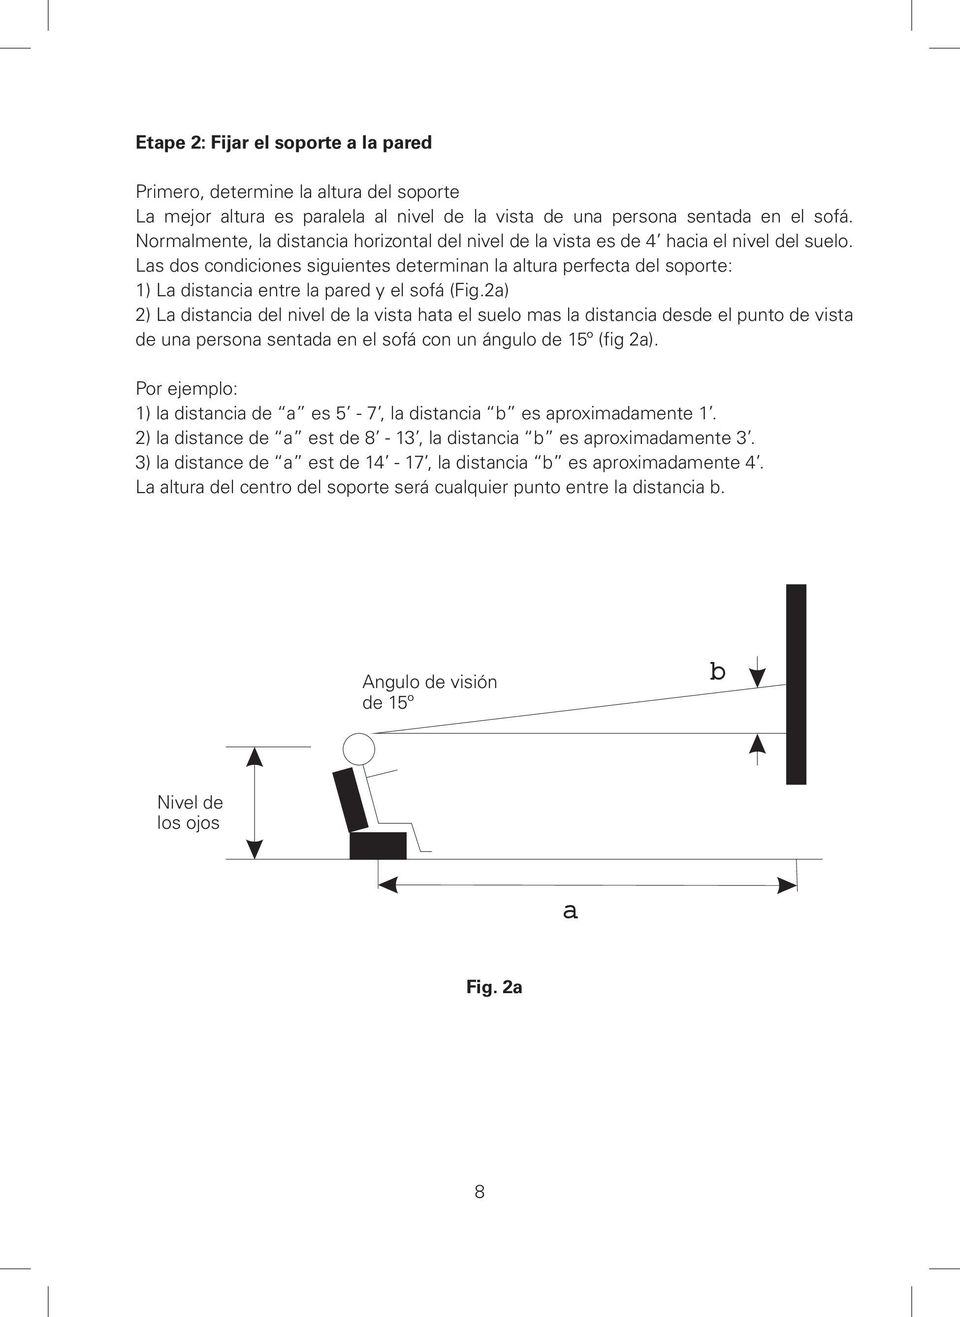 Las dos condiciones siguientes determinan la altura perfecta del soporte: 1) La distancia entre la pared y el sofá (Fig.